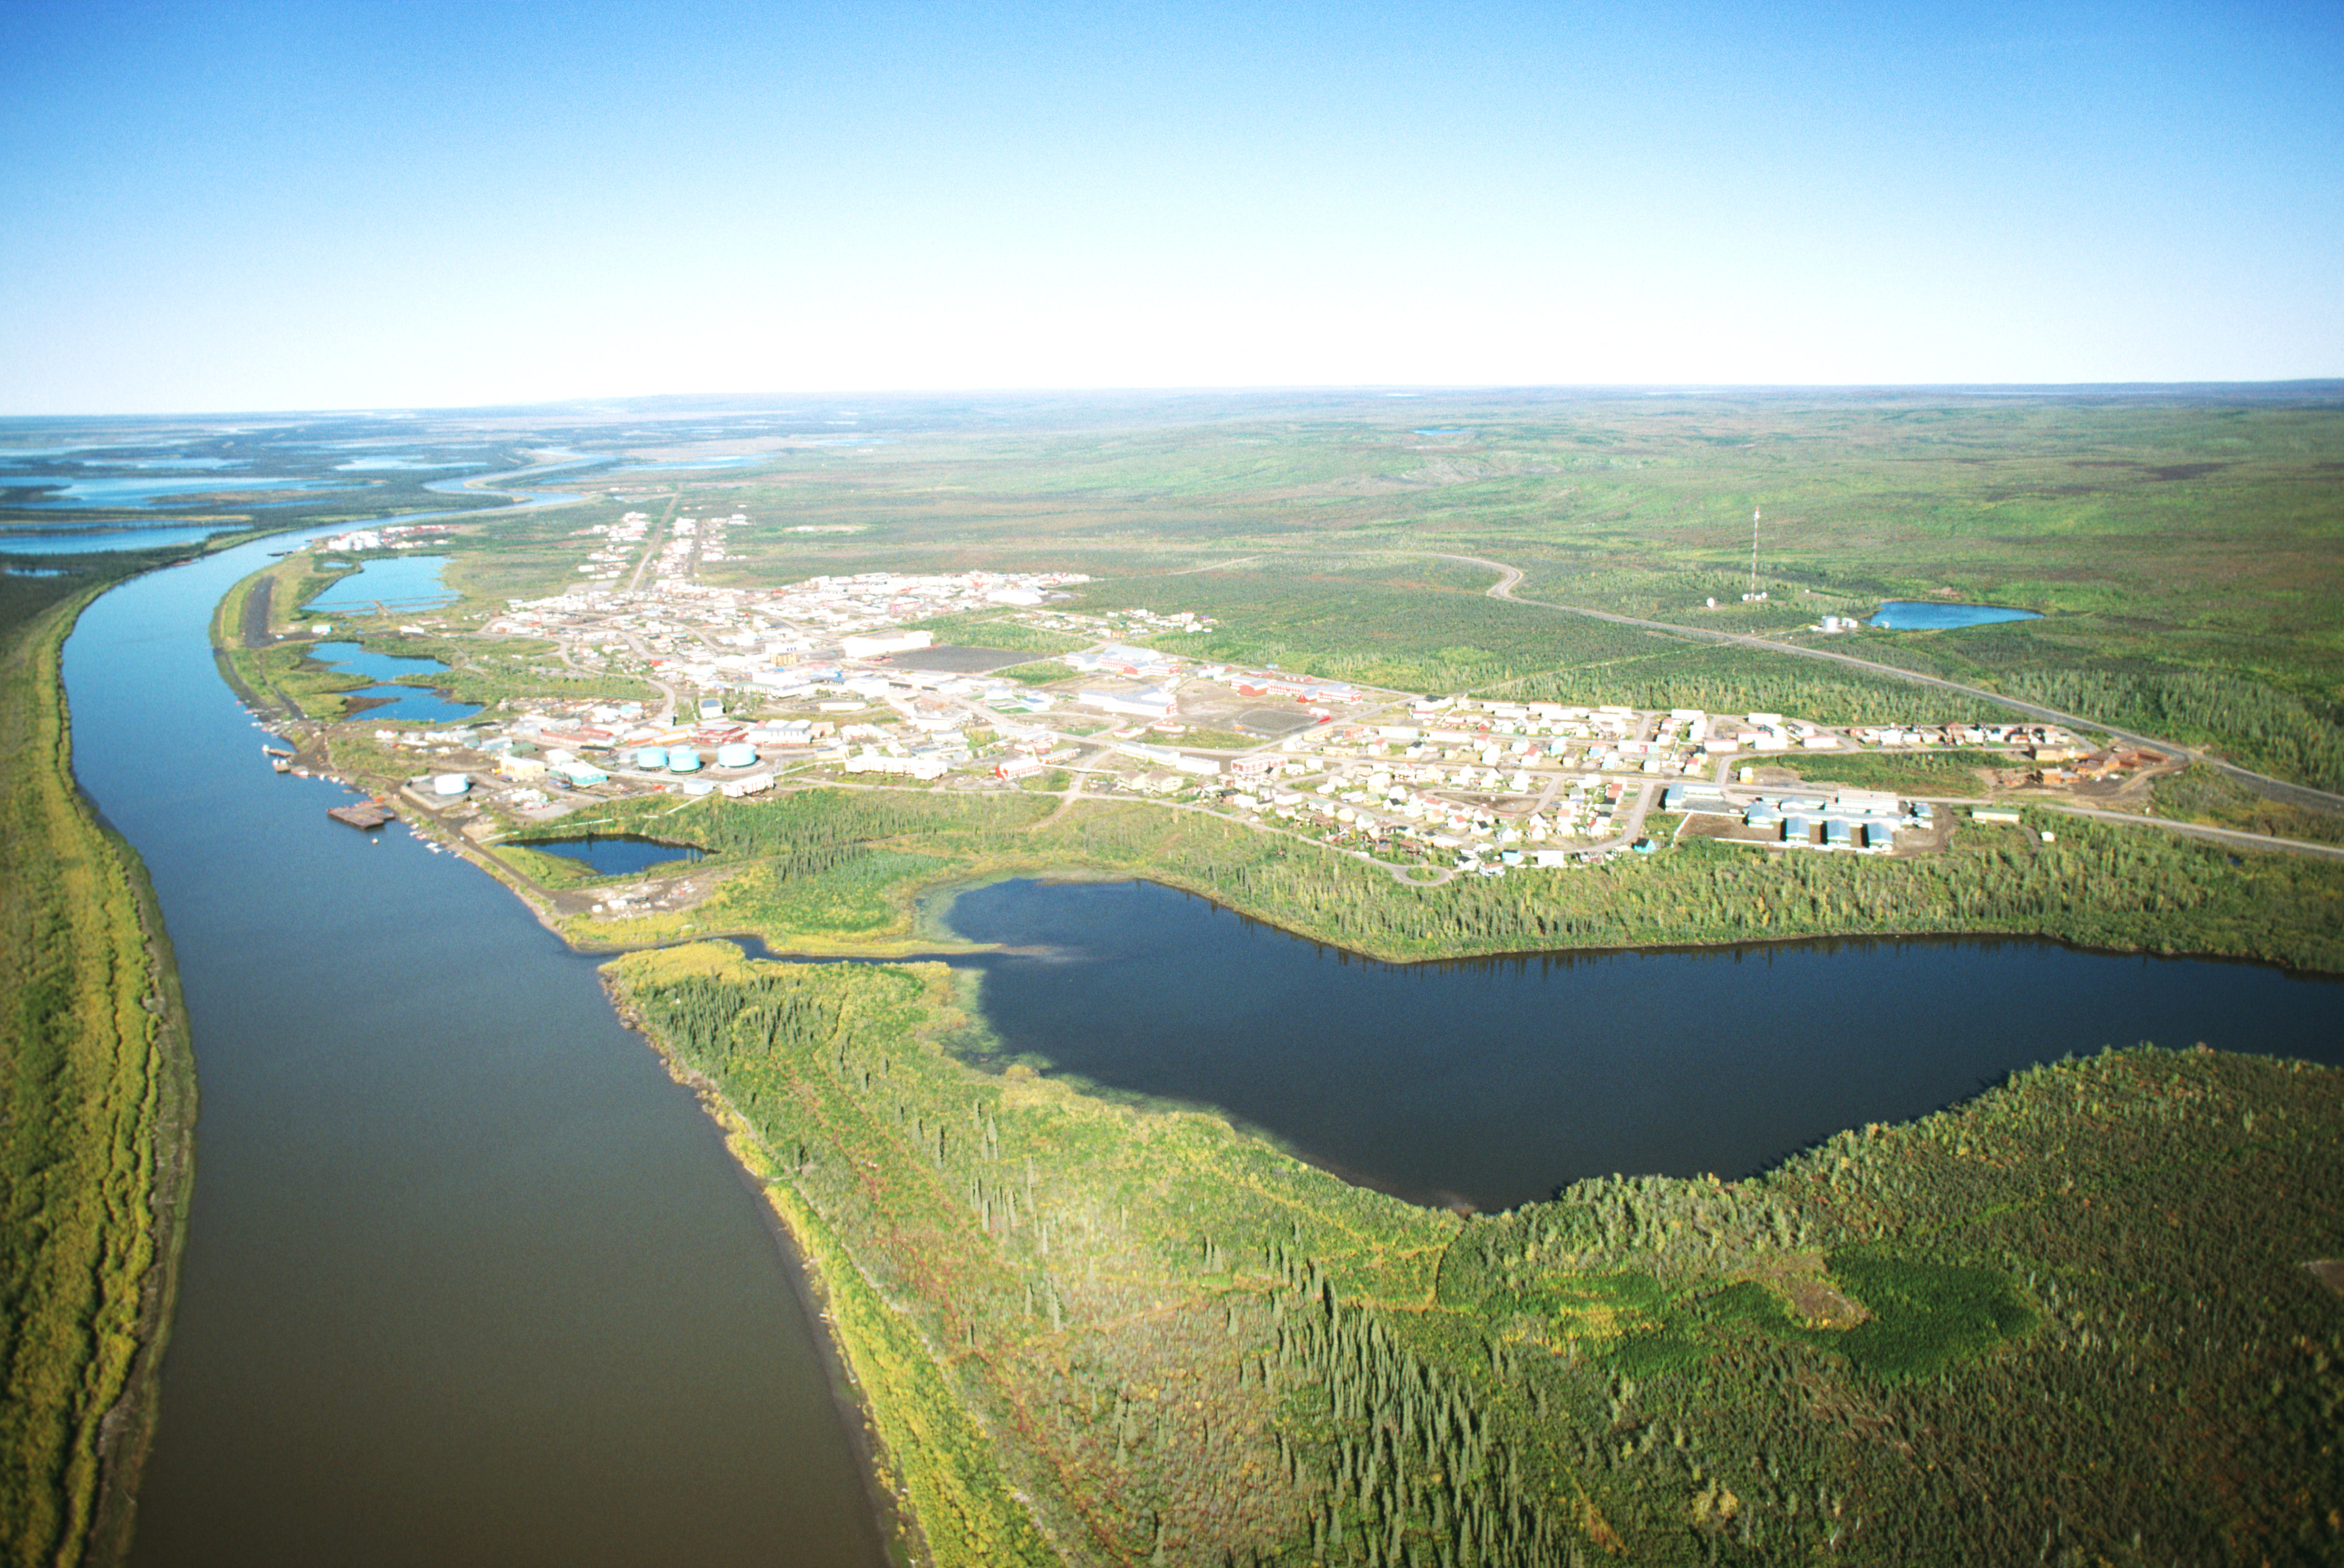 Aerial view of Inuvik in Nunavut, Canada